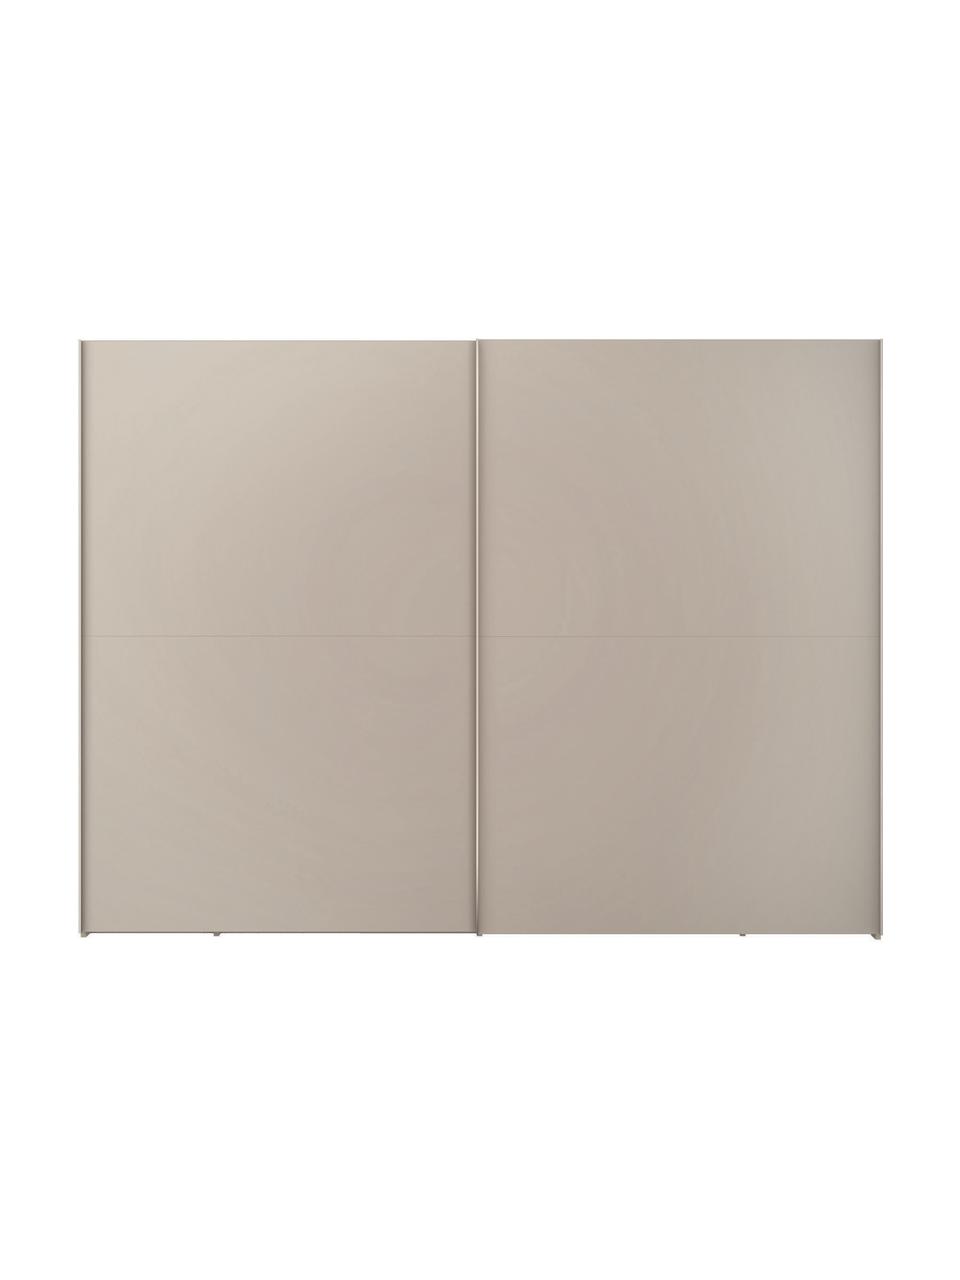 Schuifdeurkast Oliver met 2 deuren, inclusief montageservice, Frame: panelen op houtbasis, gel, Beige, 302 x 225 cm